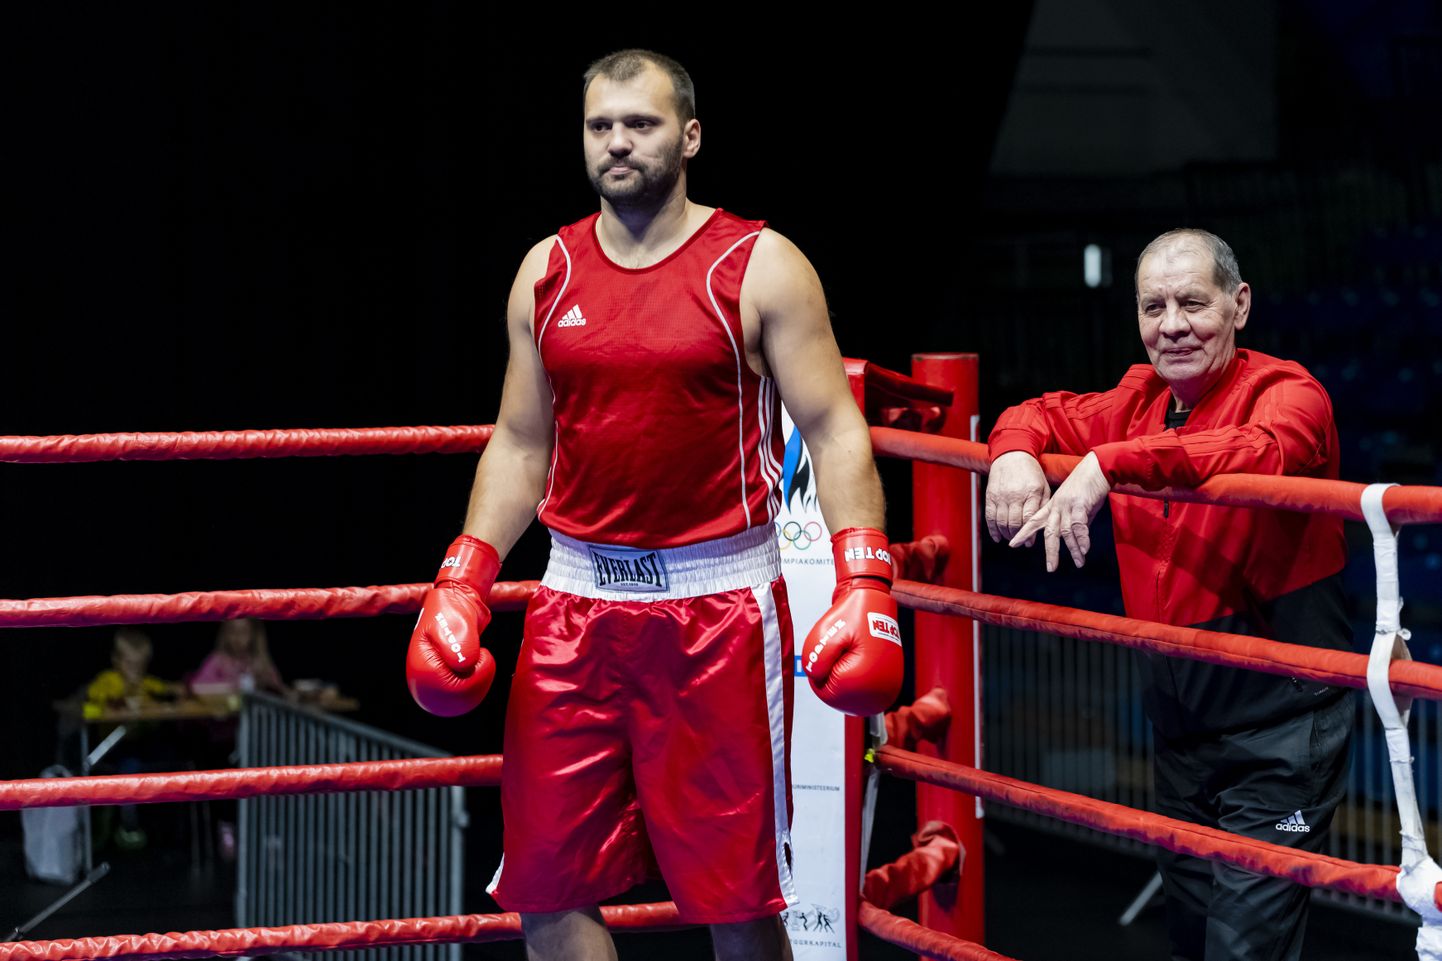 Fotol hõbemedalist Roman Rajevski Valgast (vasakul) ja tema treener Žori Nevetšerja.